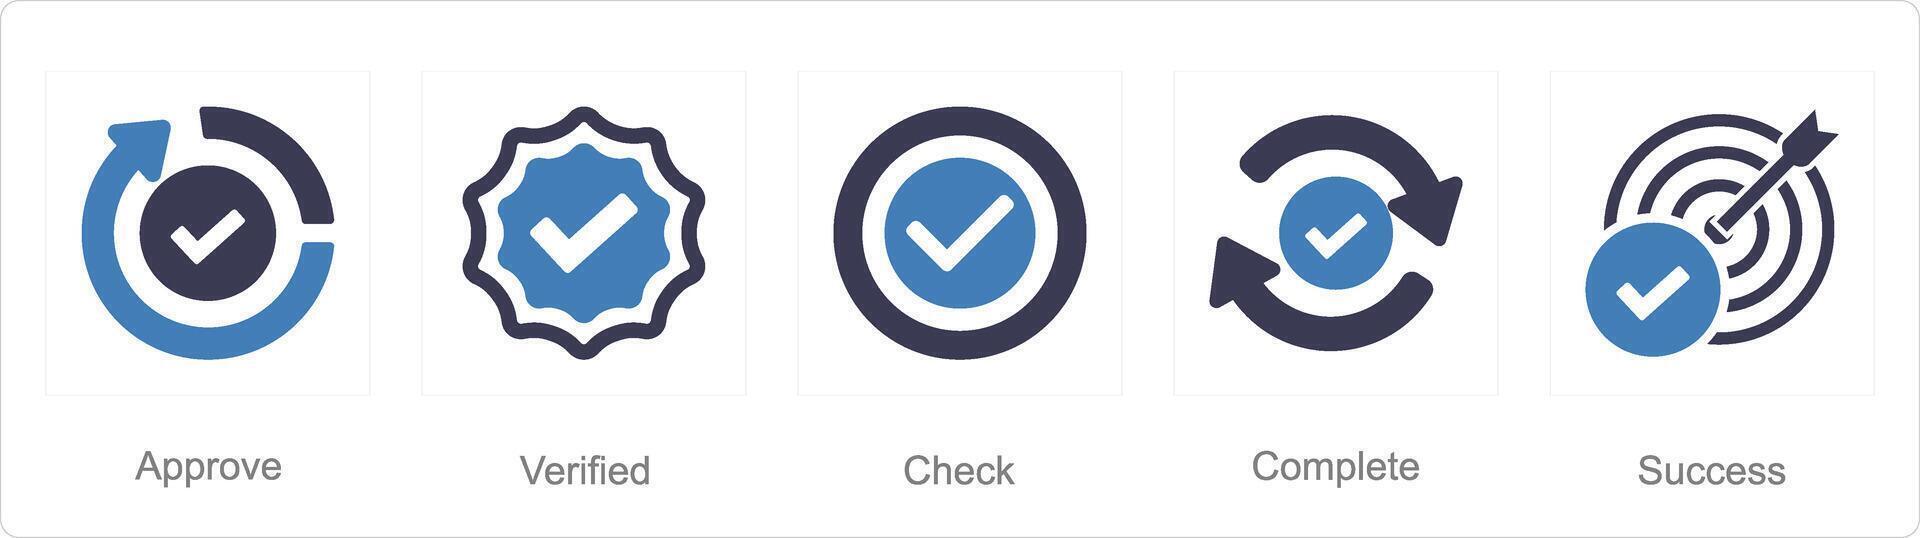 uma conjunto do 5 marca de verificação ícones Como aprovar, verificado, Verifica vetor